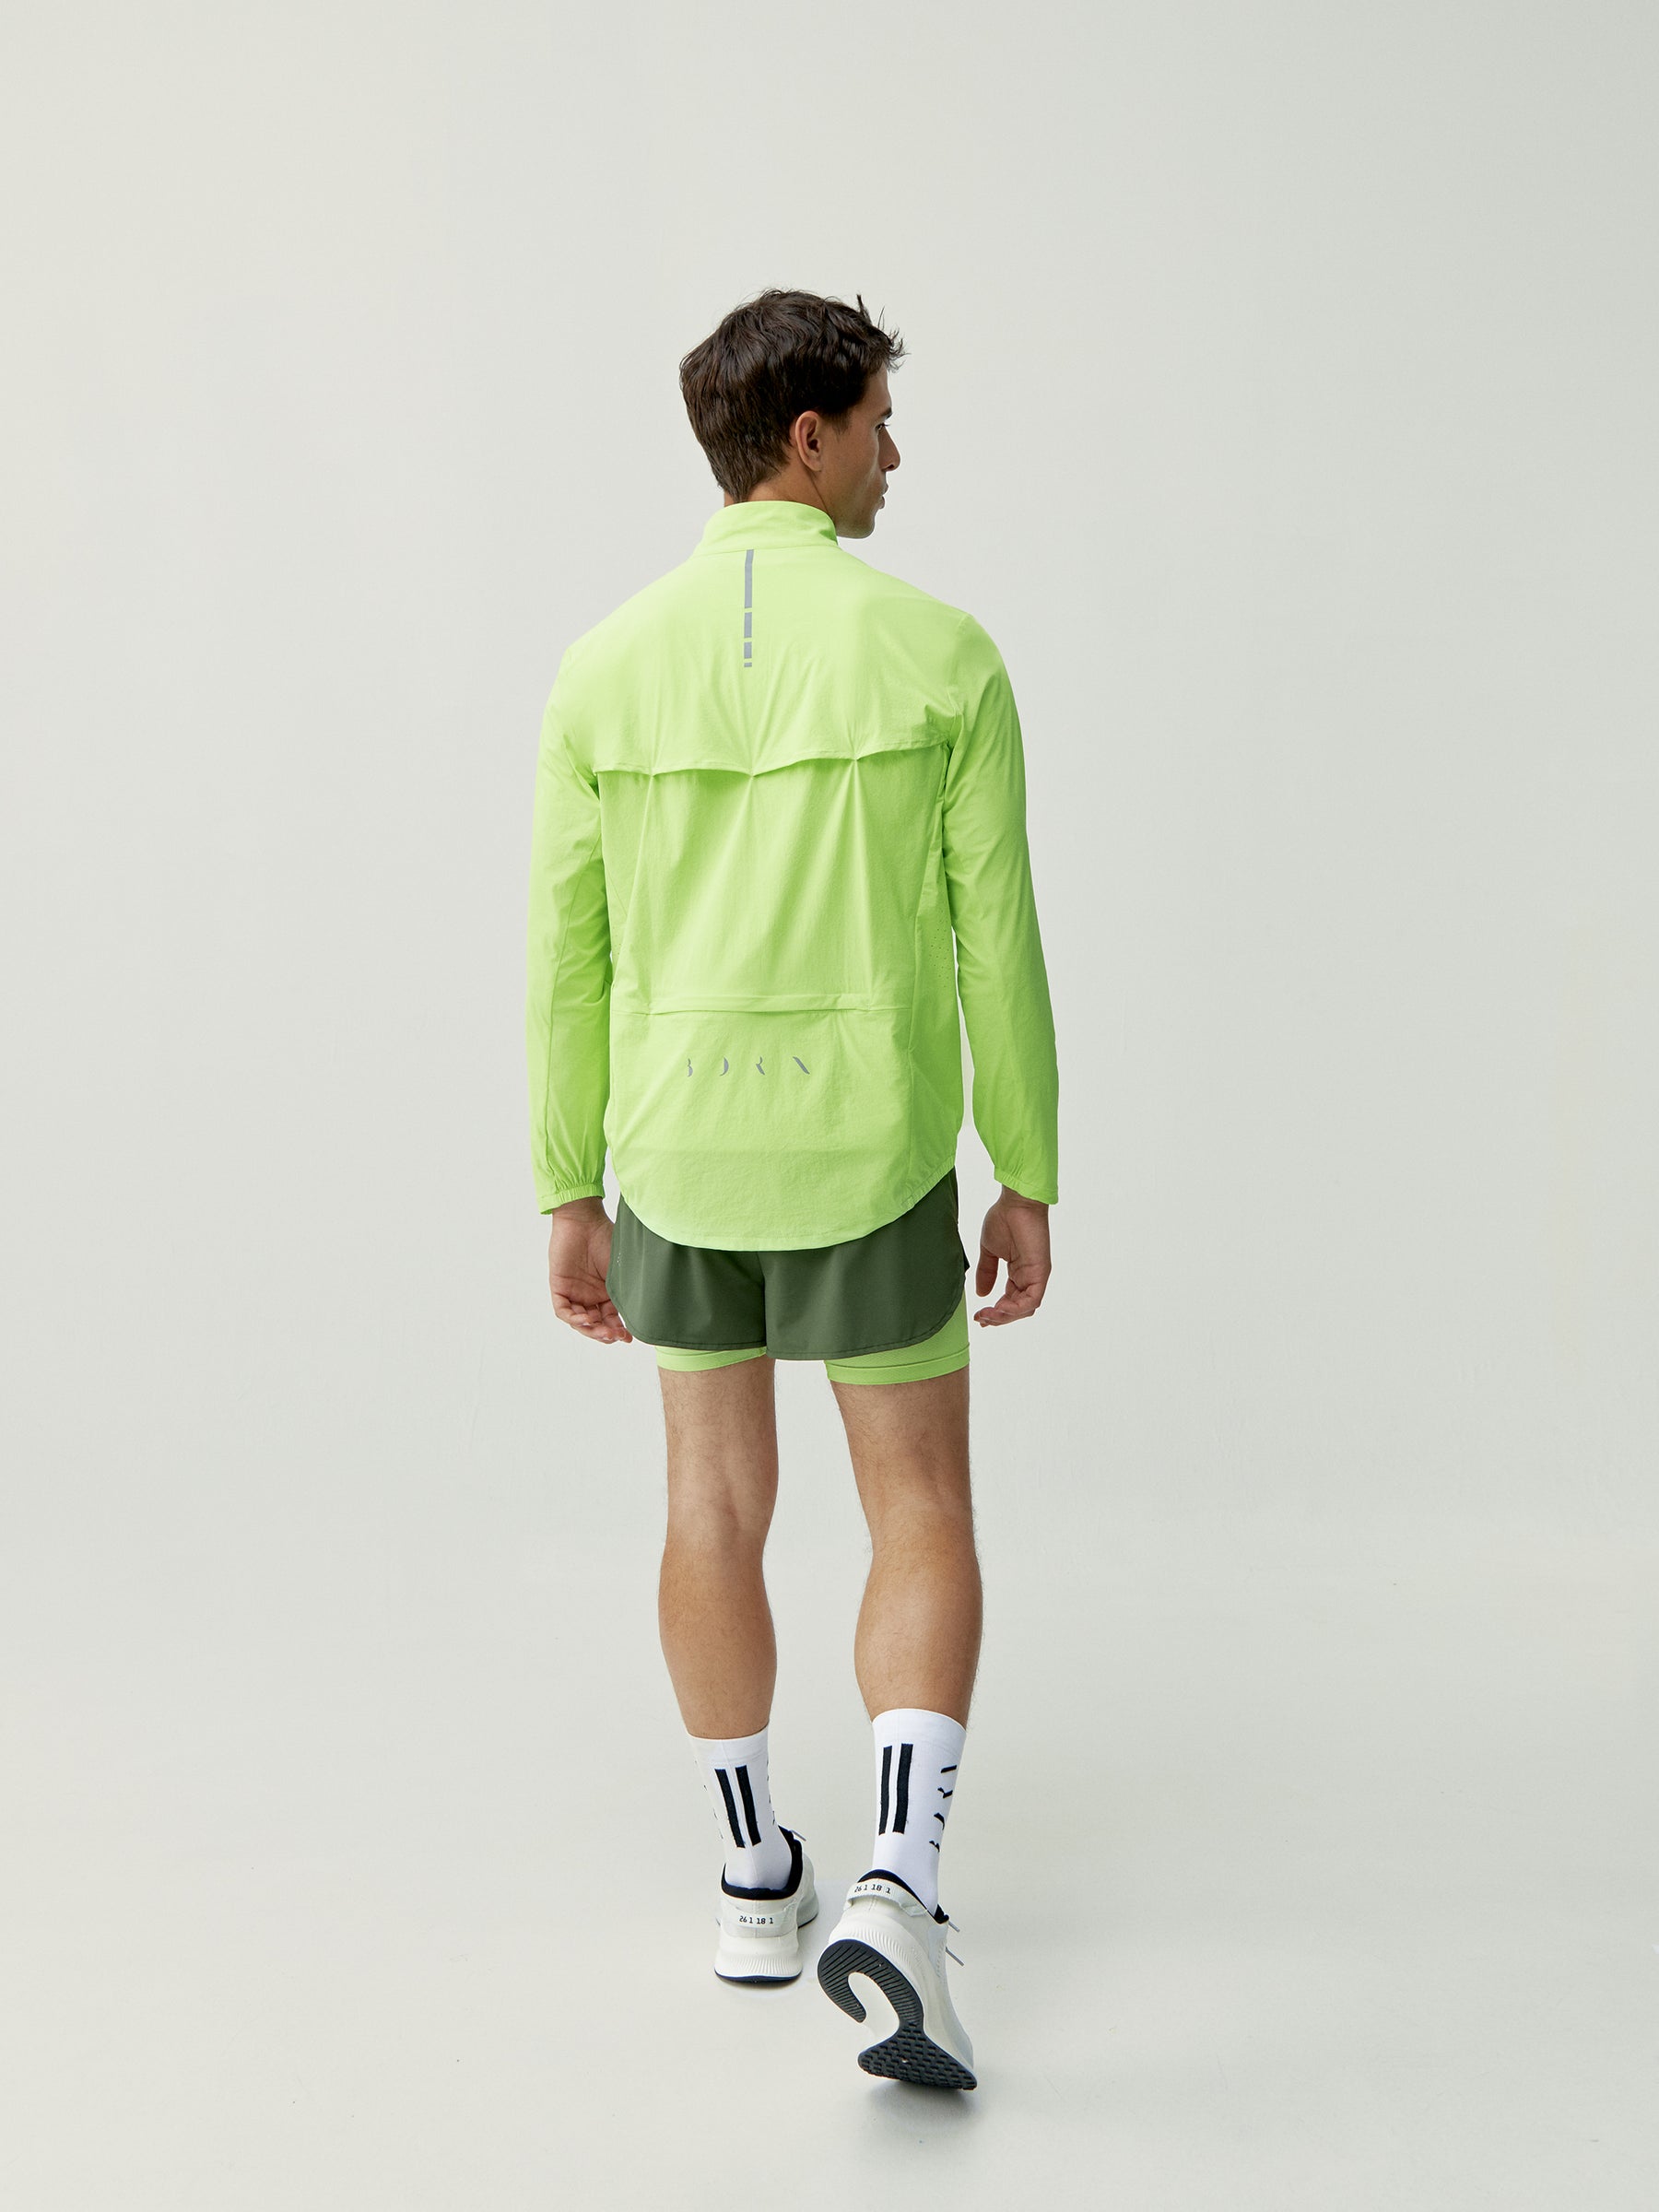 Nyasa Jacket in Lime Bright